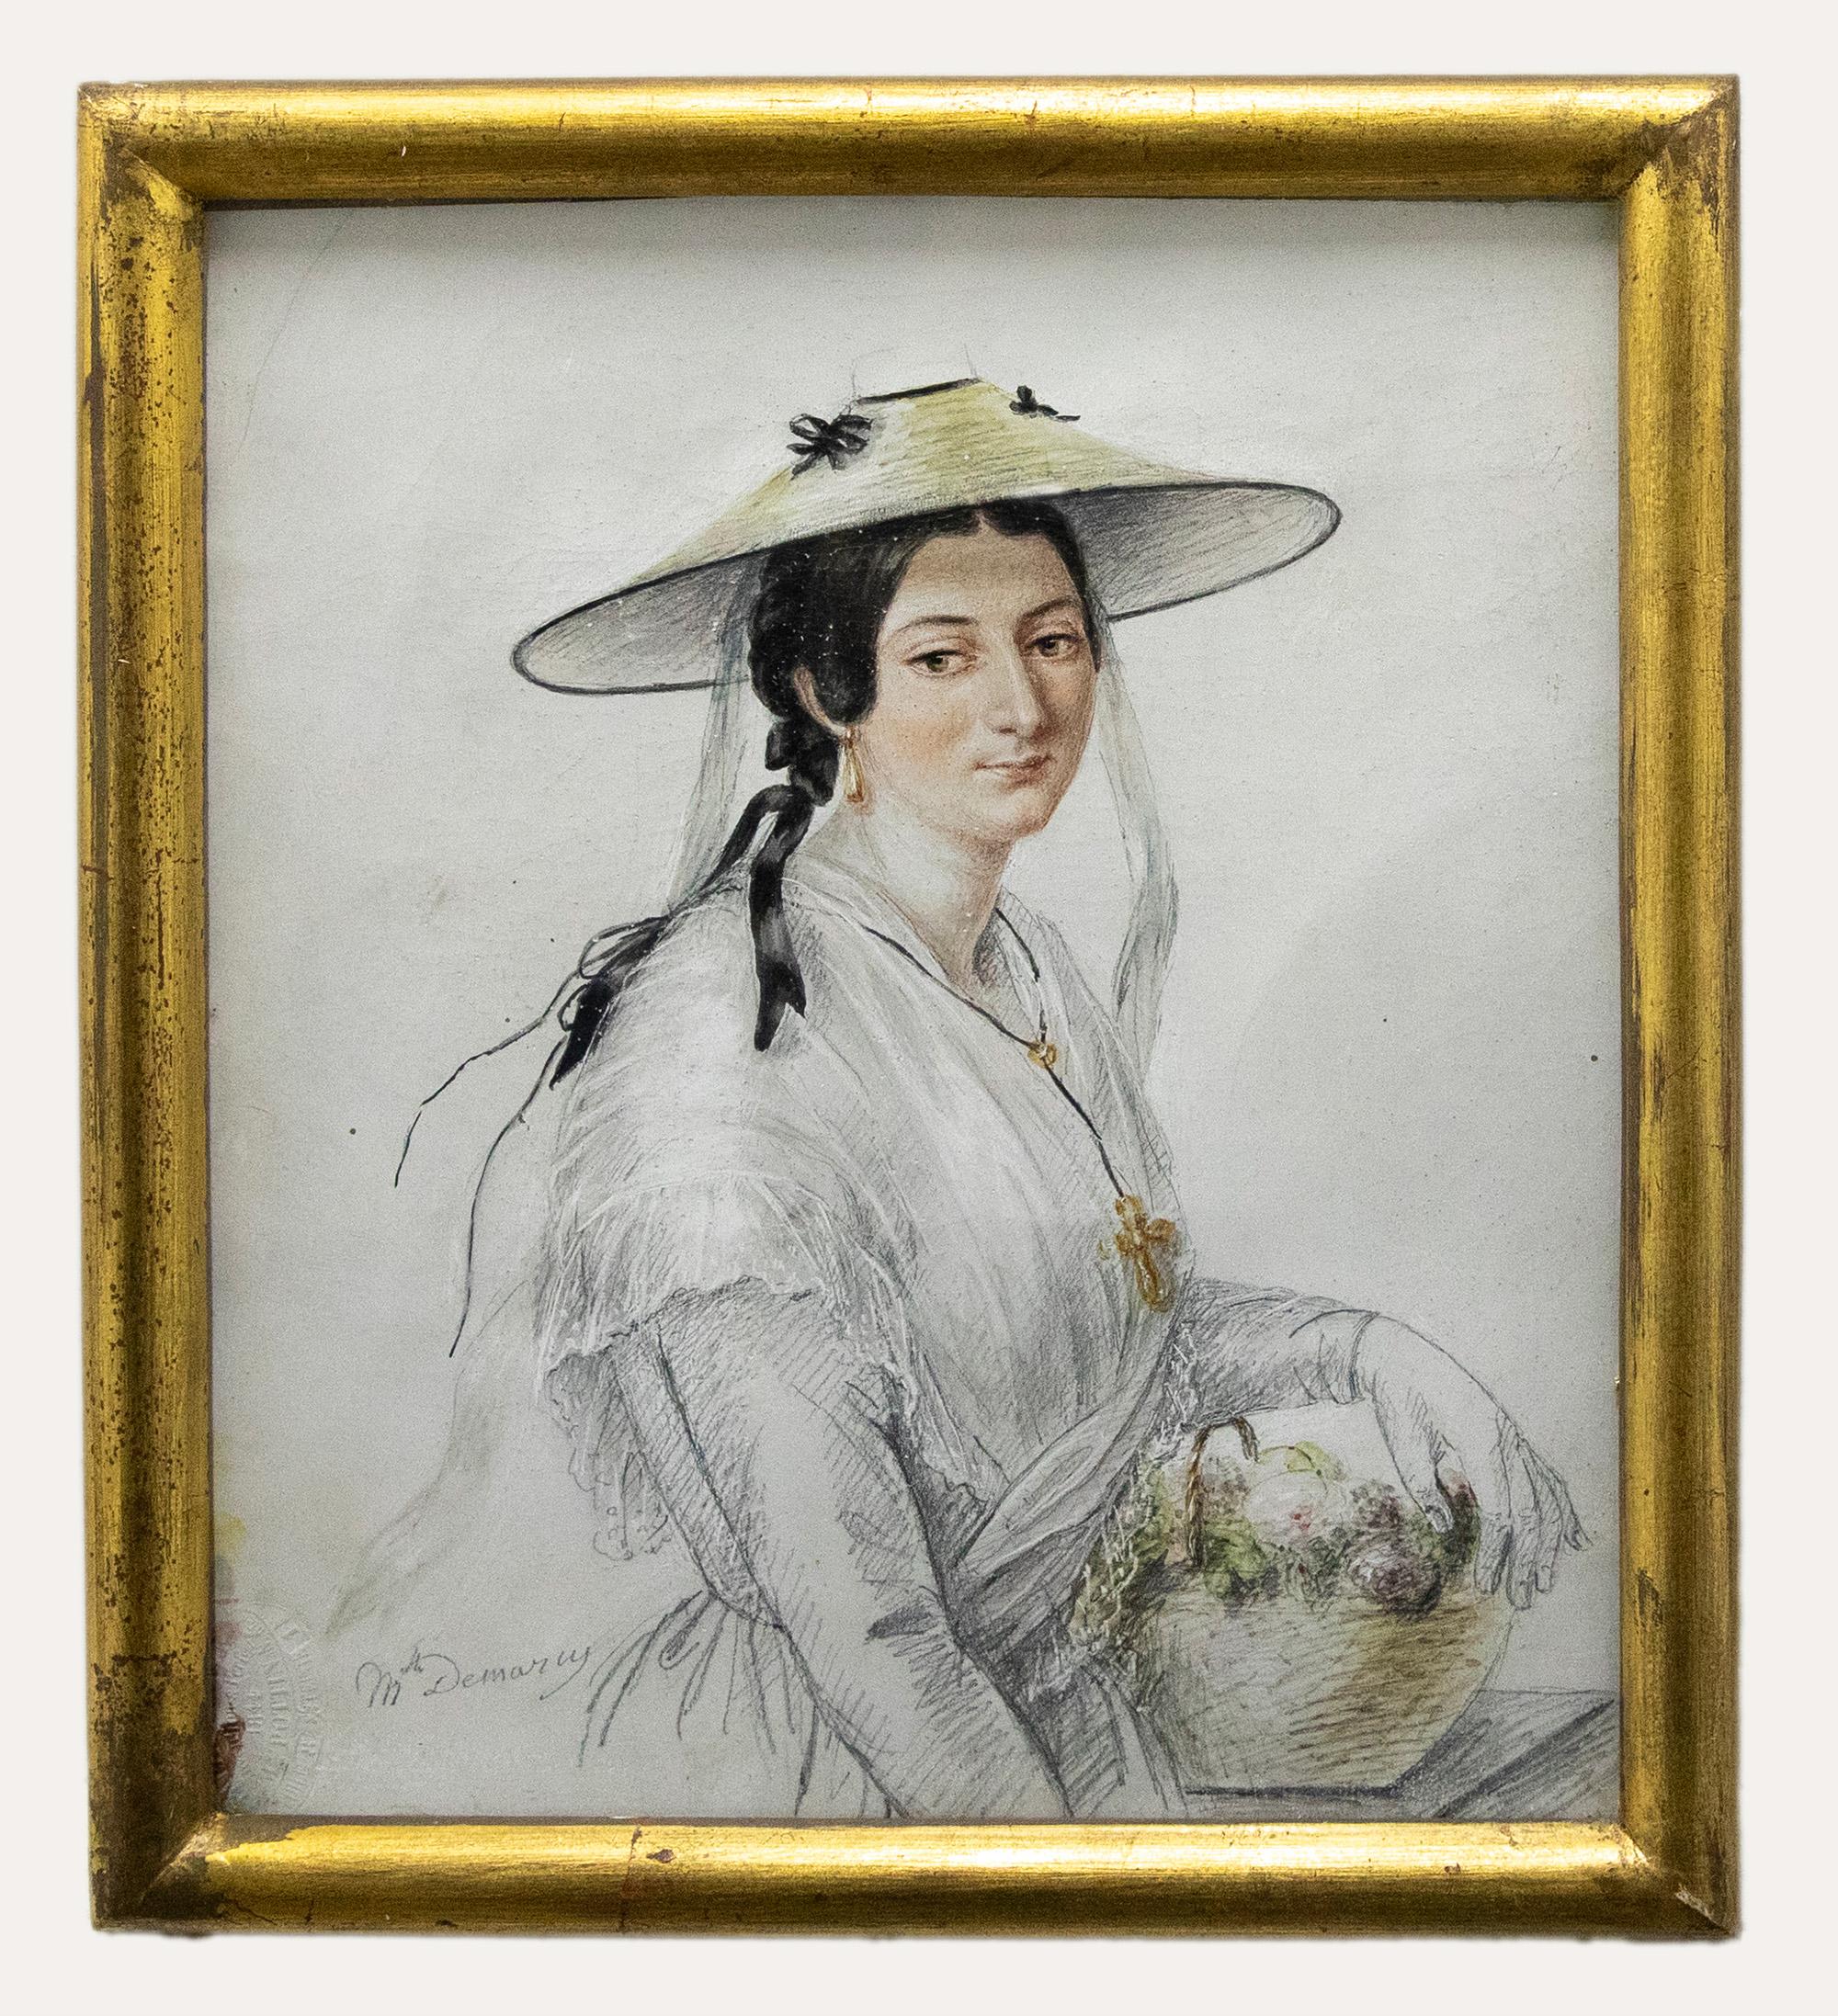 Unknown Portrait - M. Demancy - 1844 Watercolour, Lady with a Flower Basket